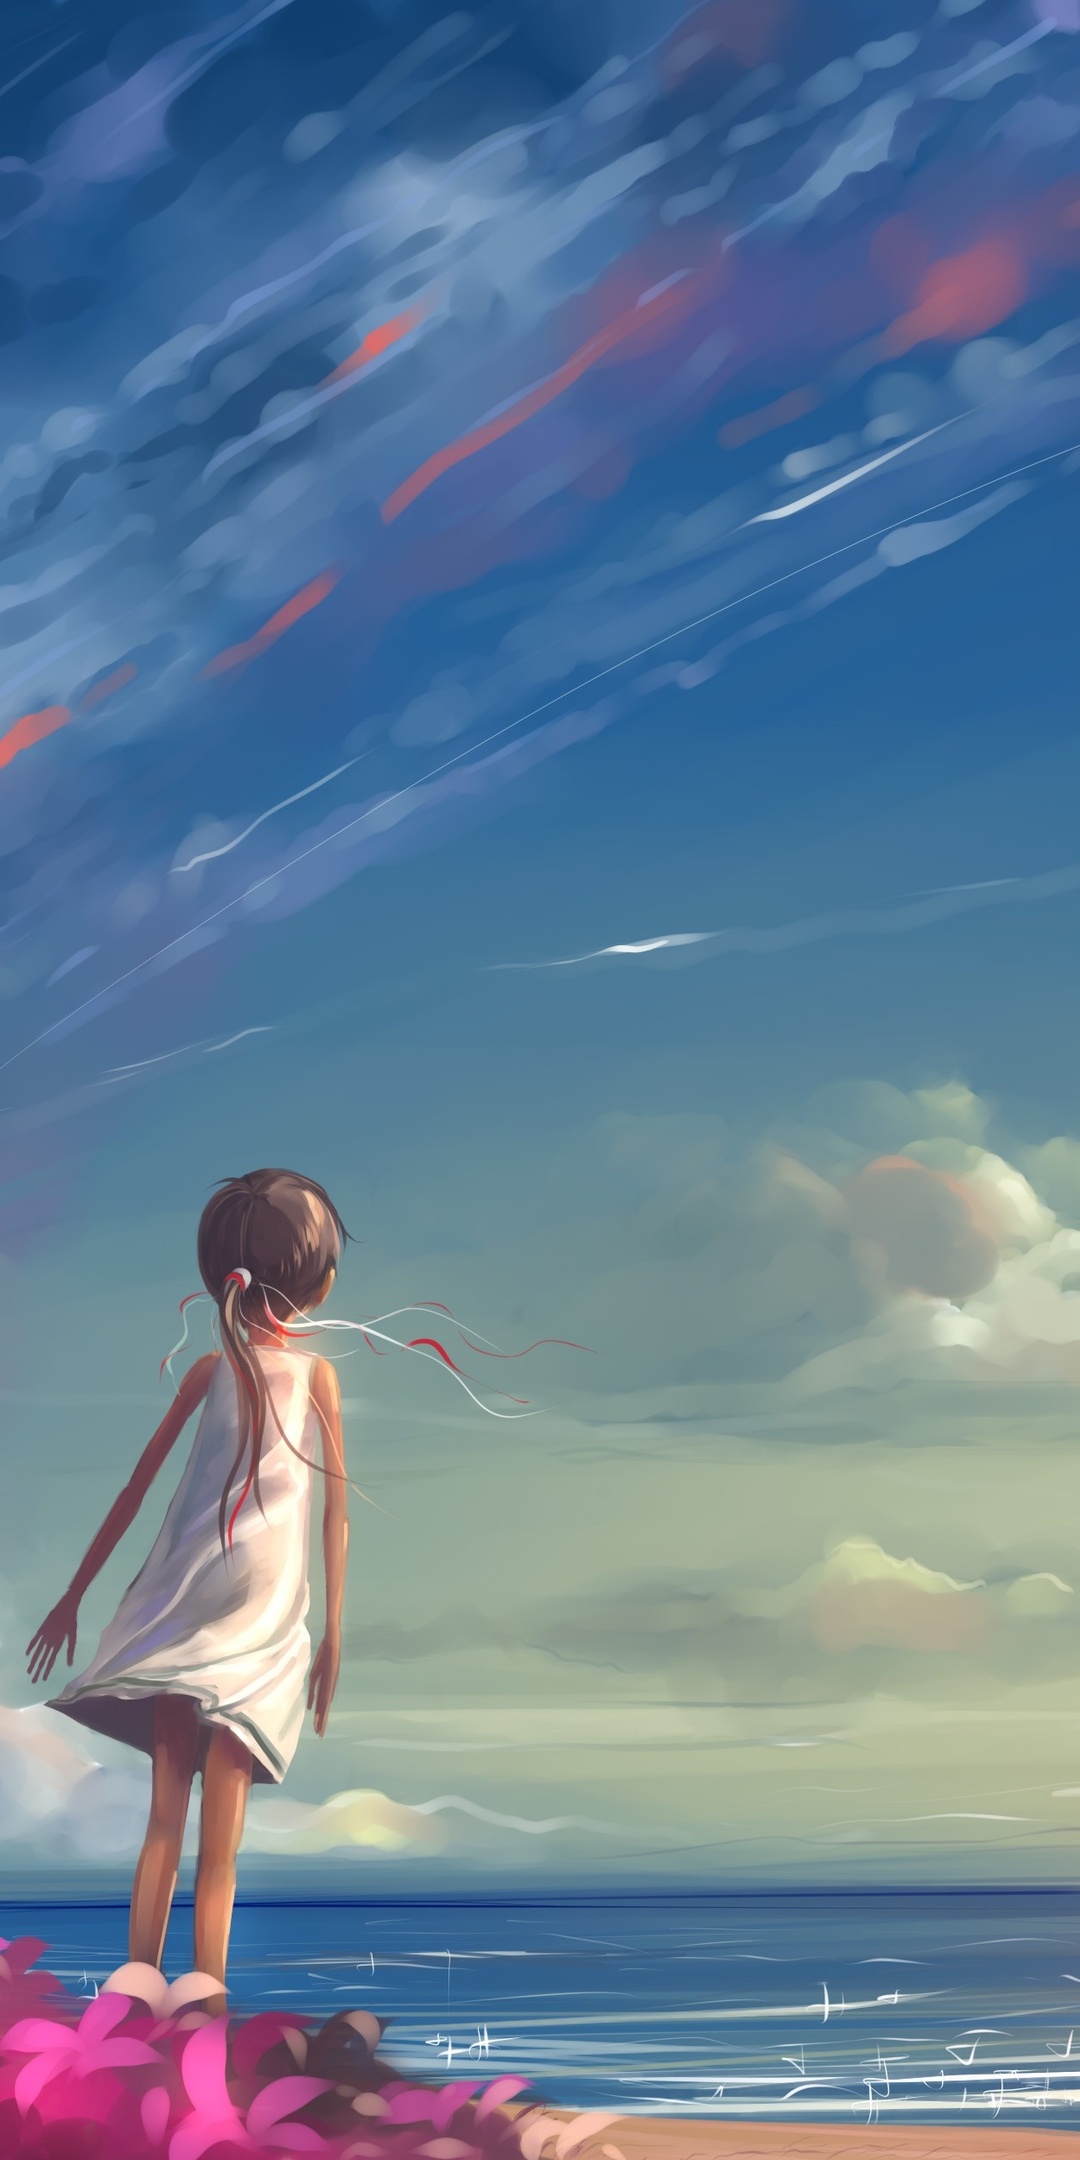 little-girl-looking-at-kite-artwork-landscape-4k-fg.jpg